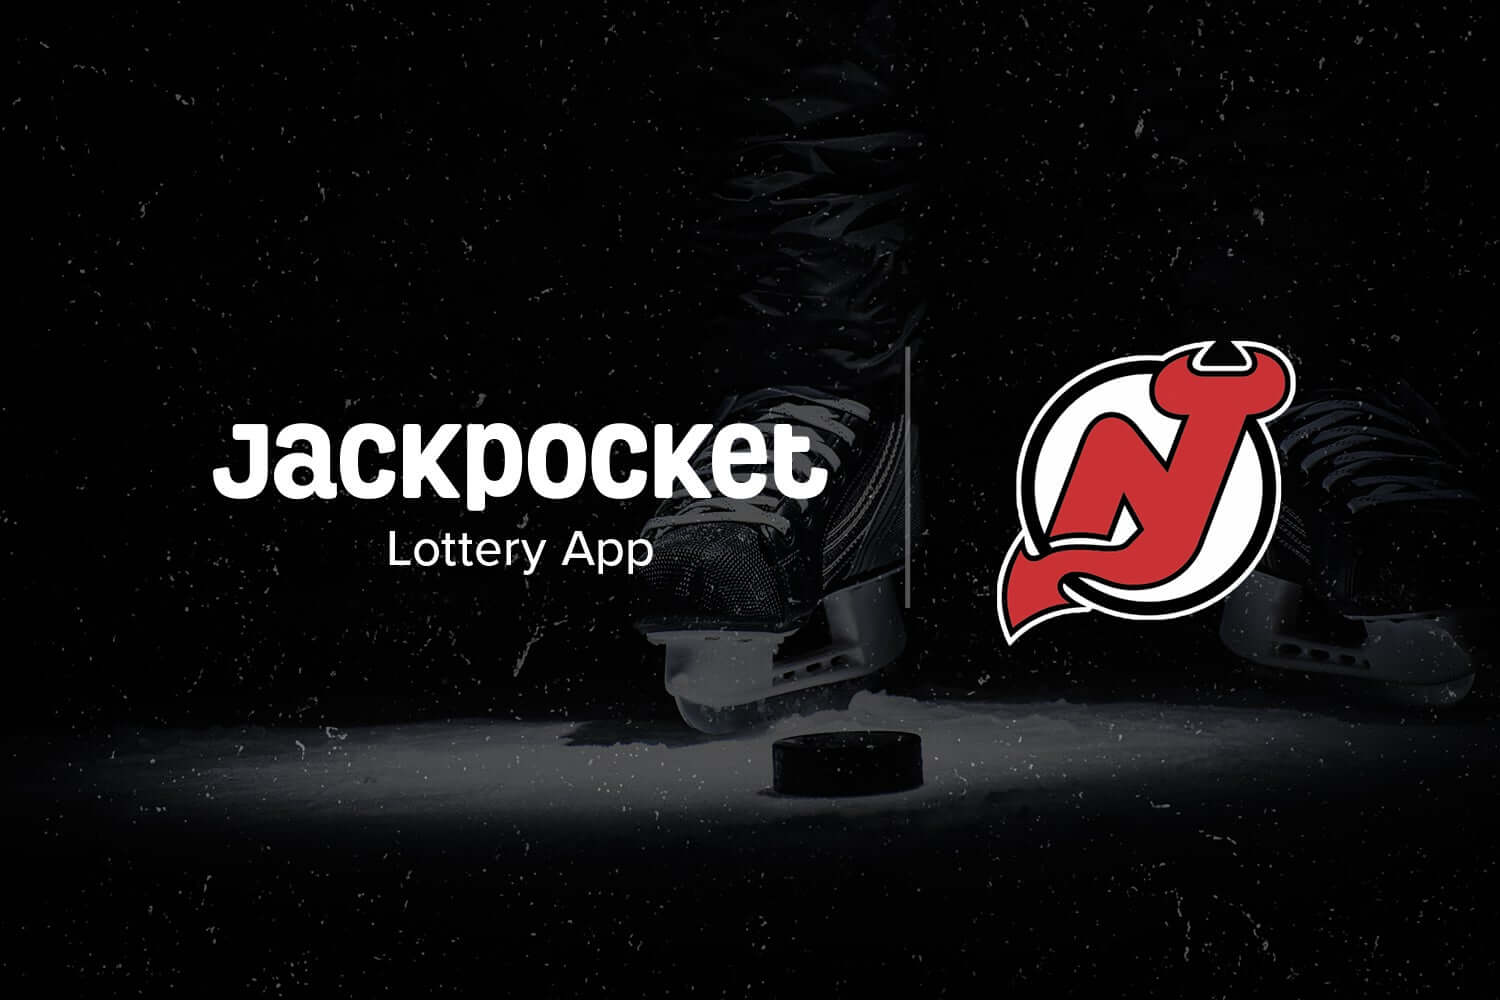 Jackpocket Devils partnership